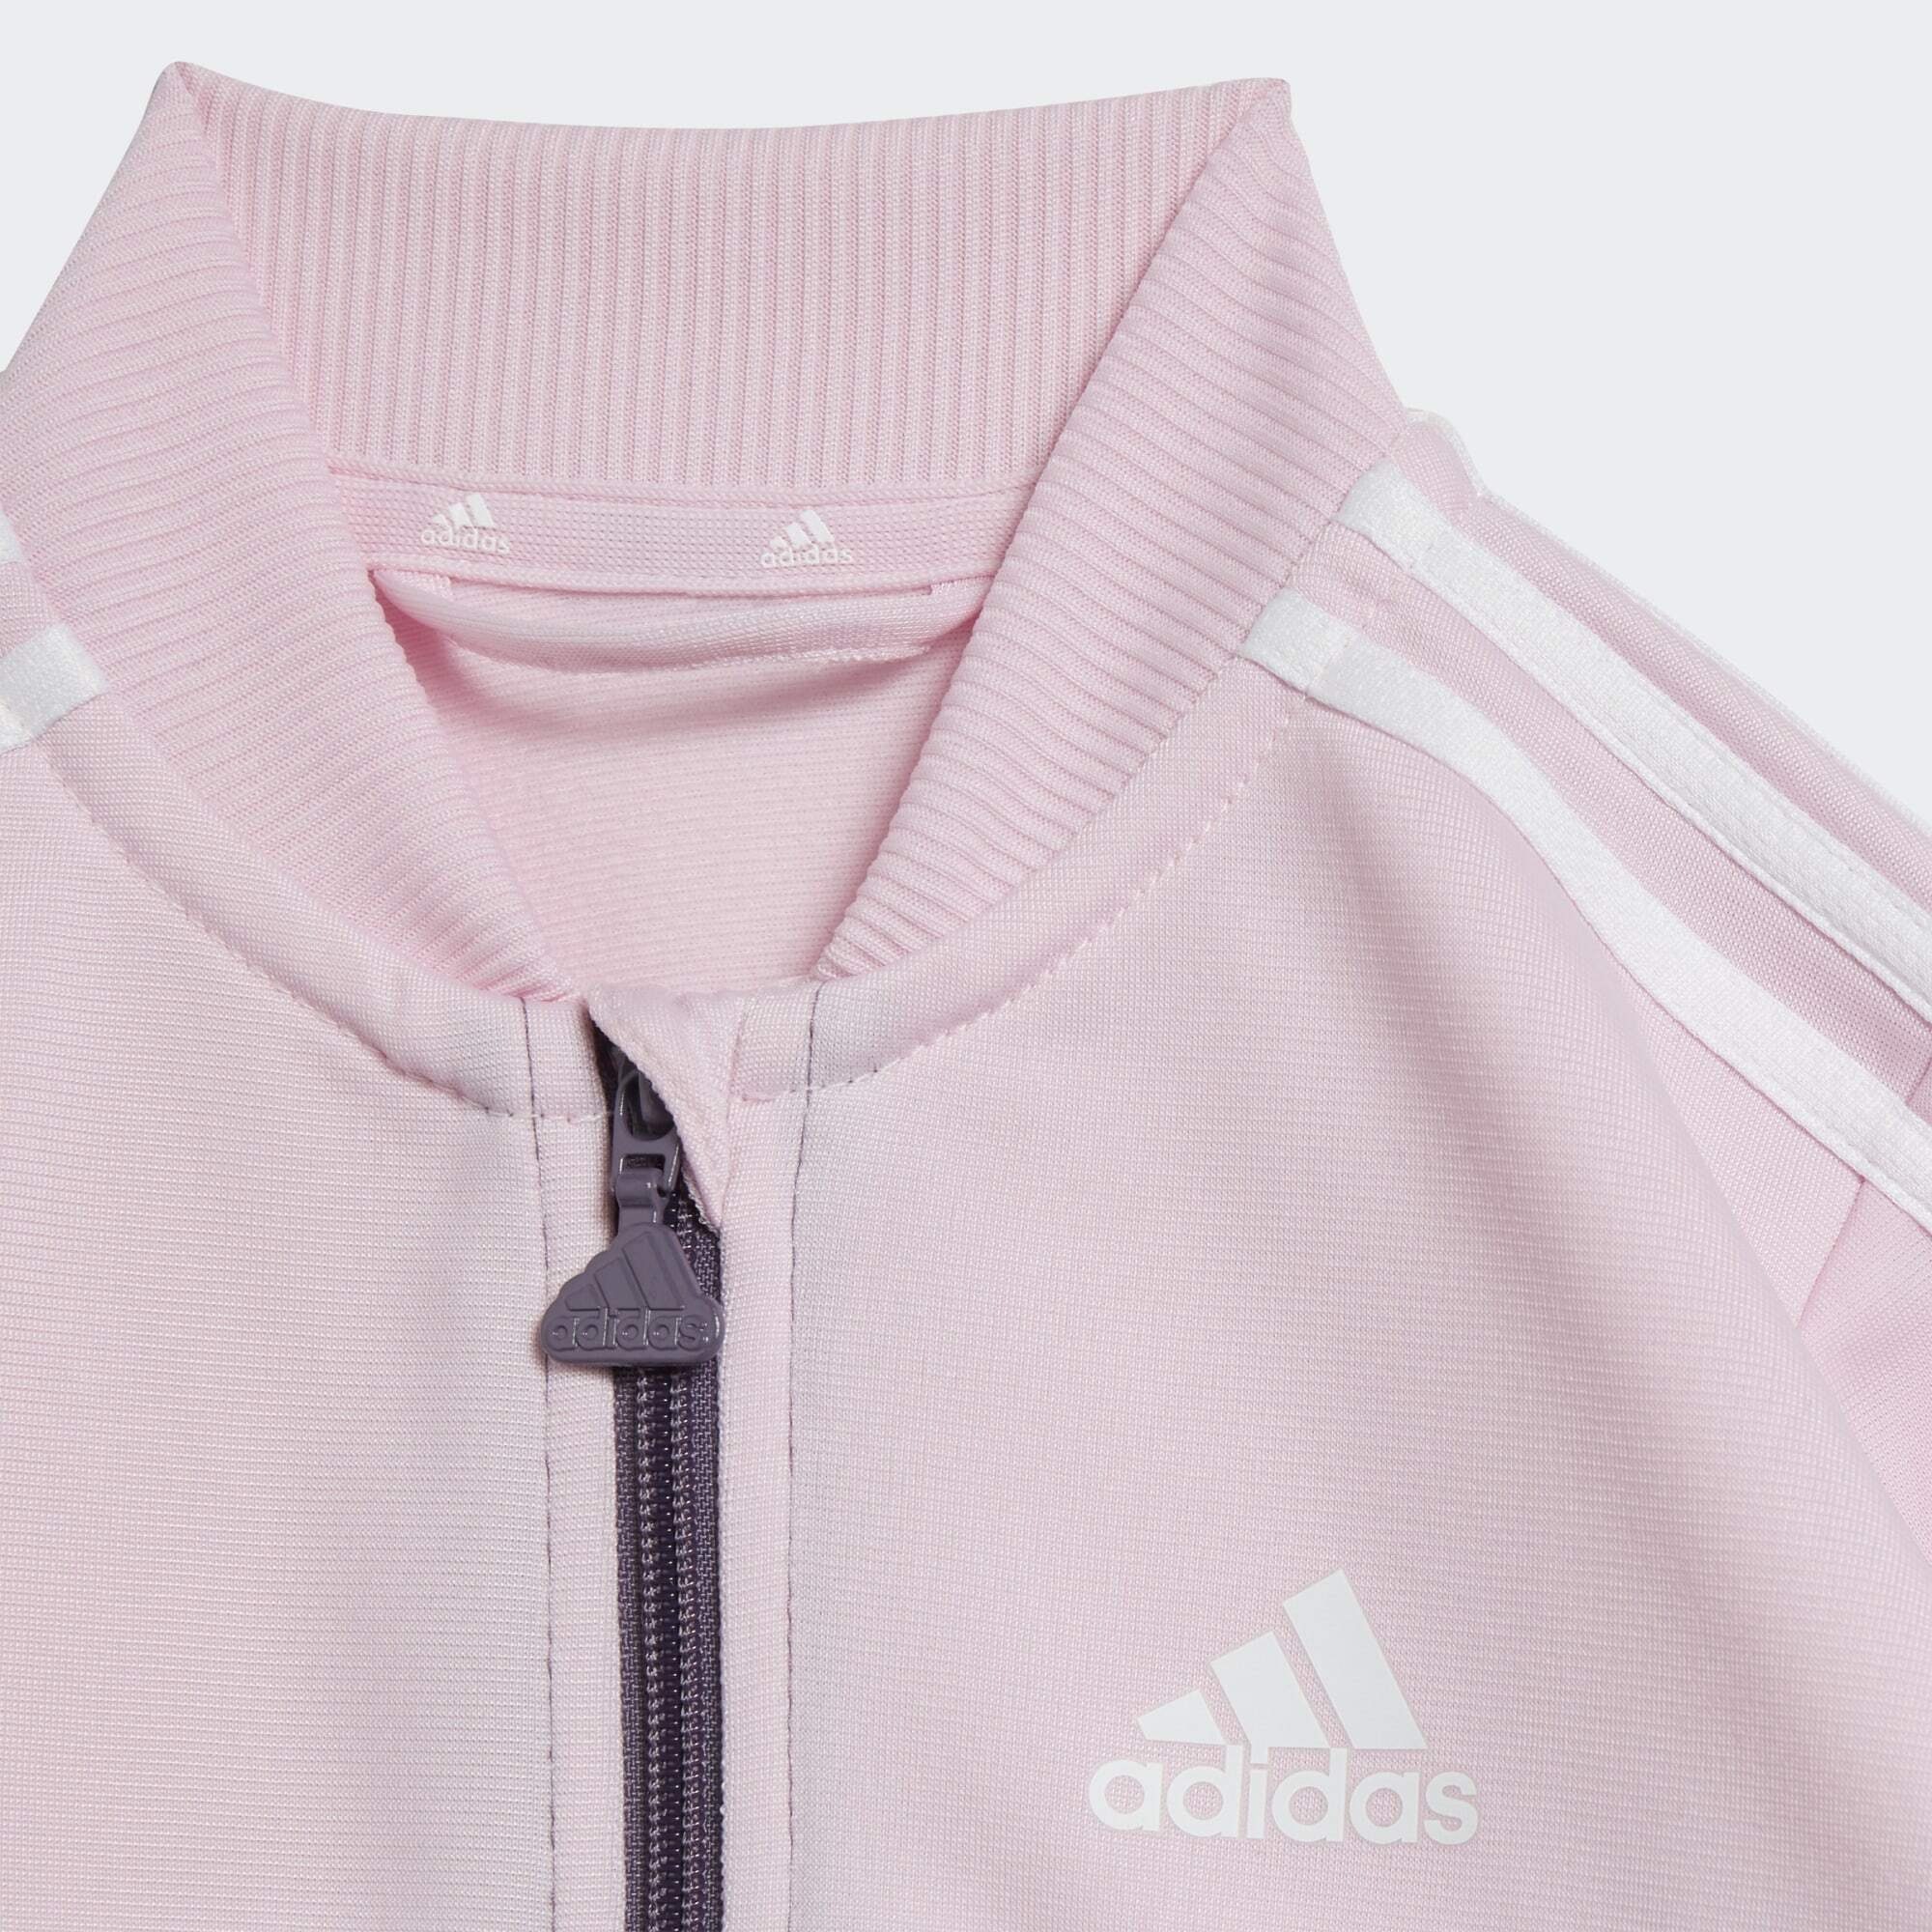 adidas Sportswear Pink Trainingsanzug / Clear Shadow Violet / White